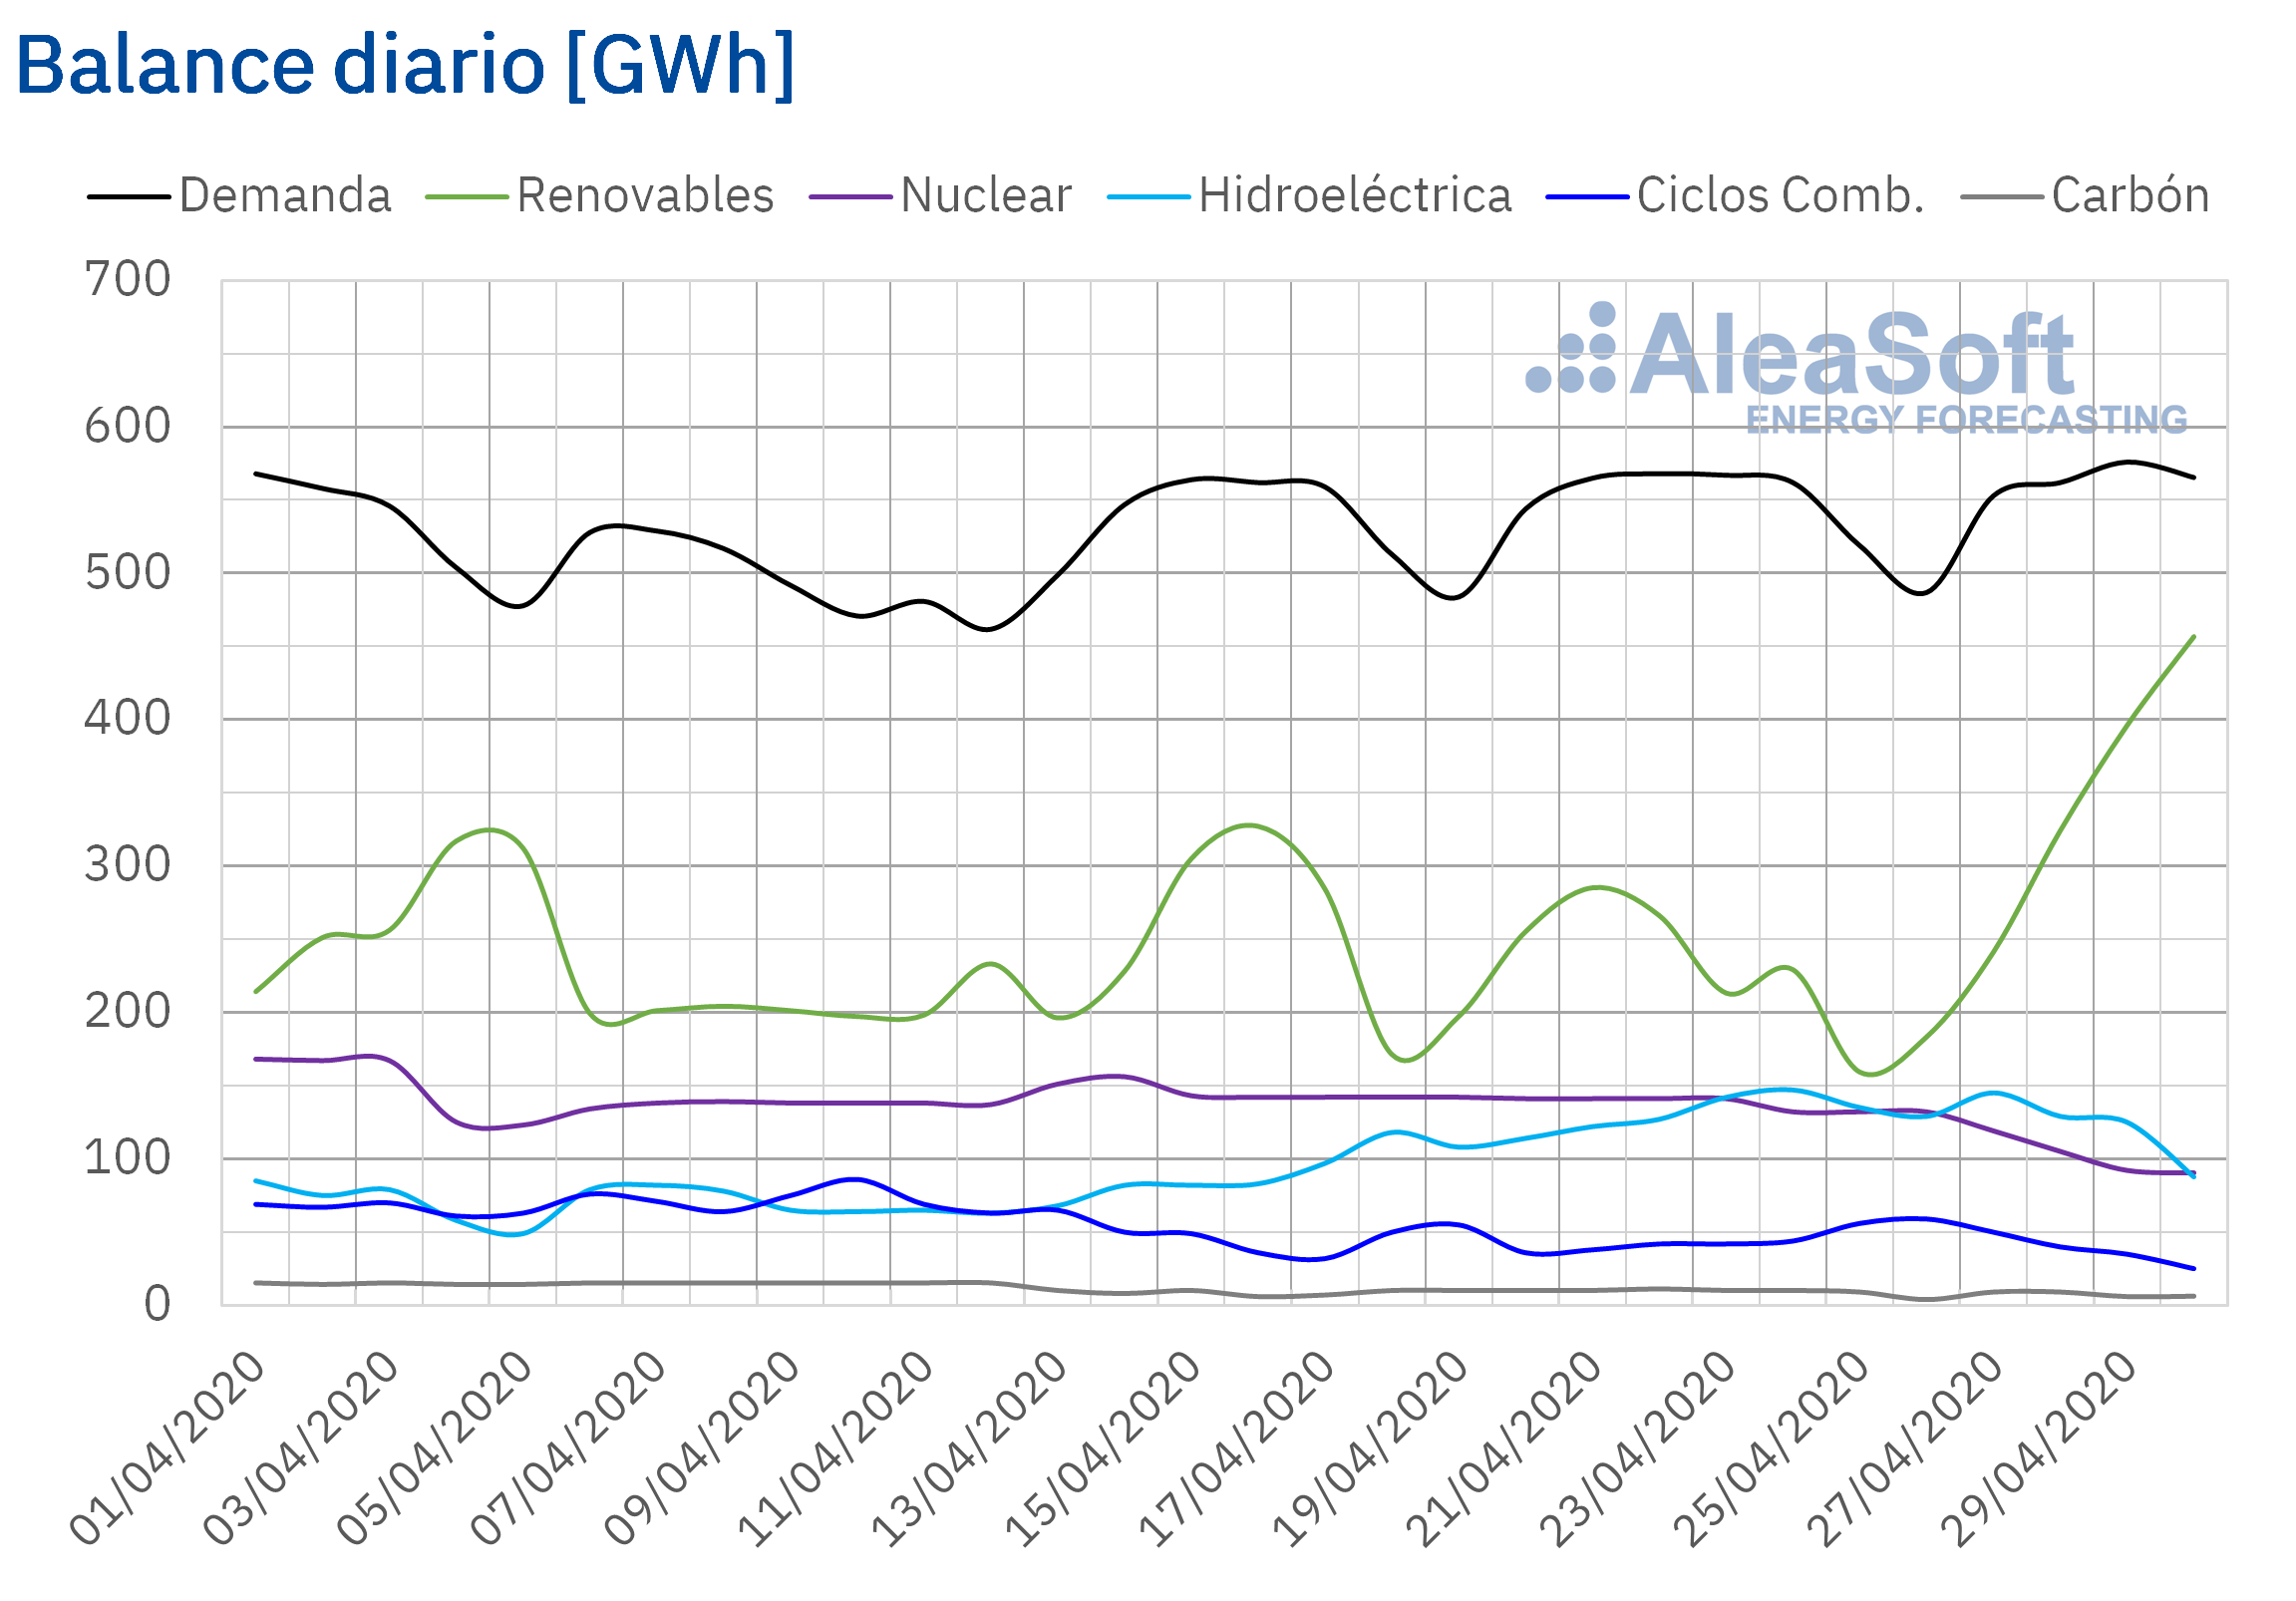 AleaSoft - Balance diario electricidad Espana Demanda Produccion